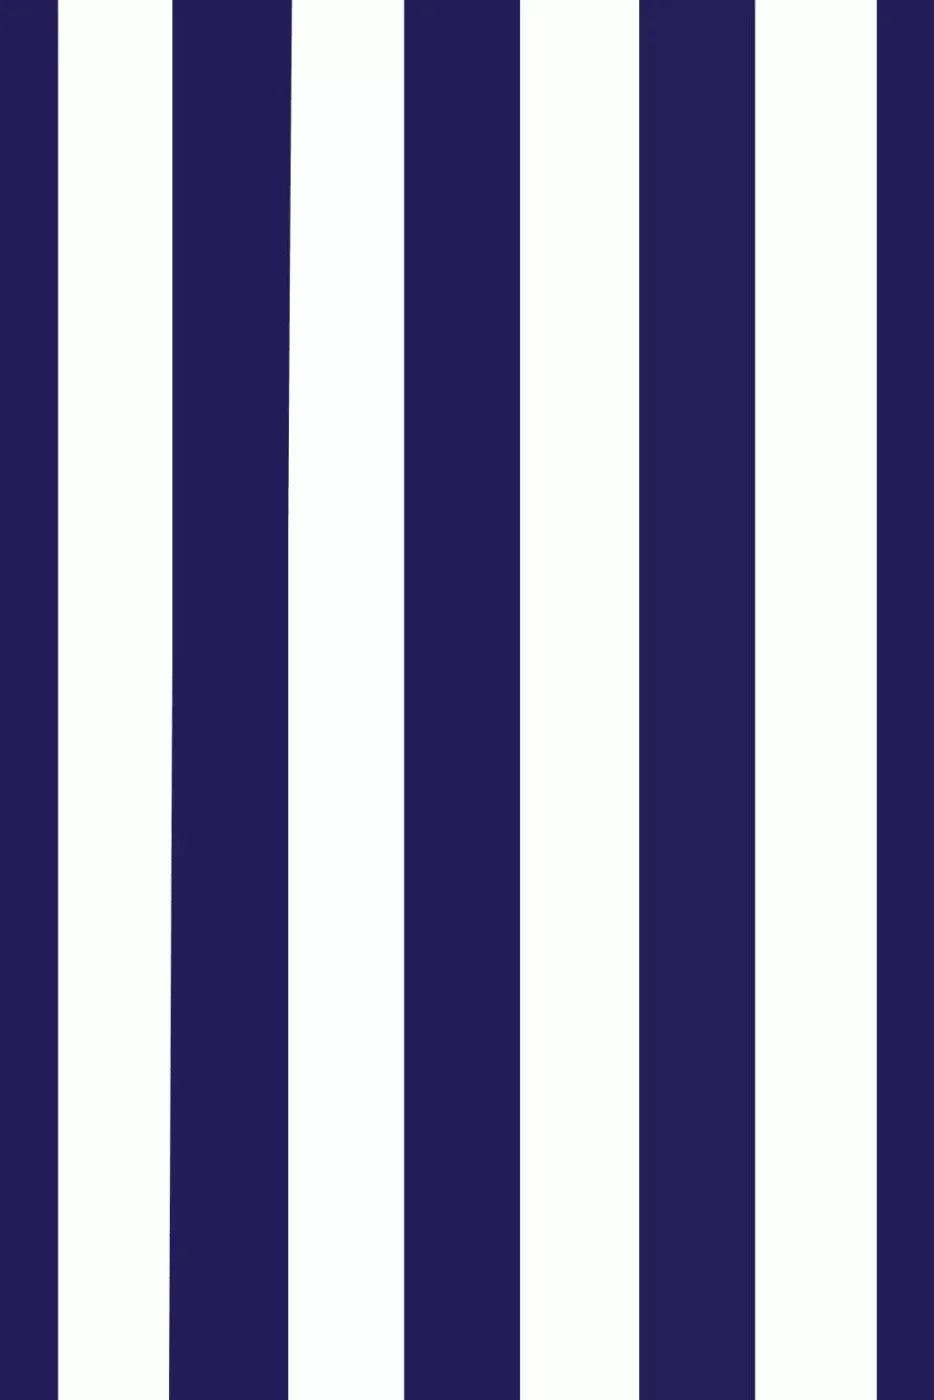 Stripes Bold Navy Backdrop